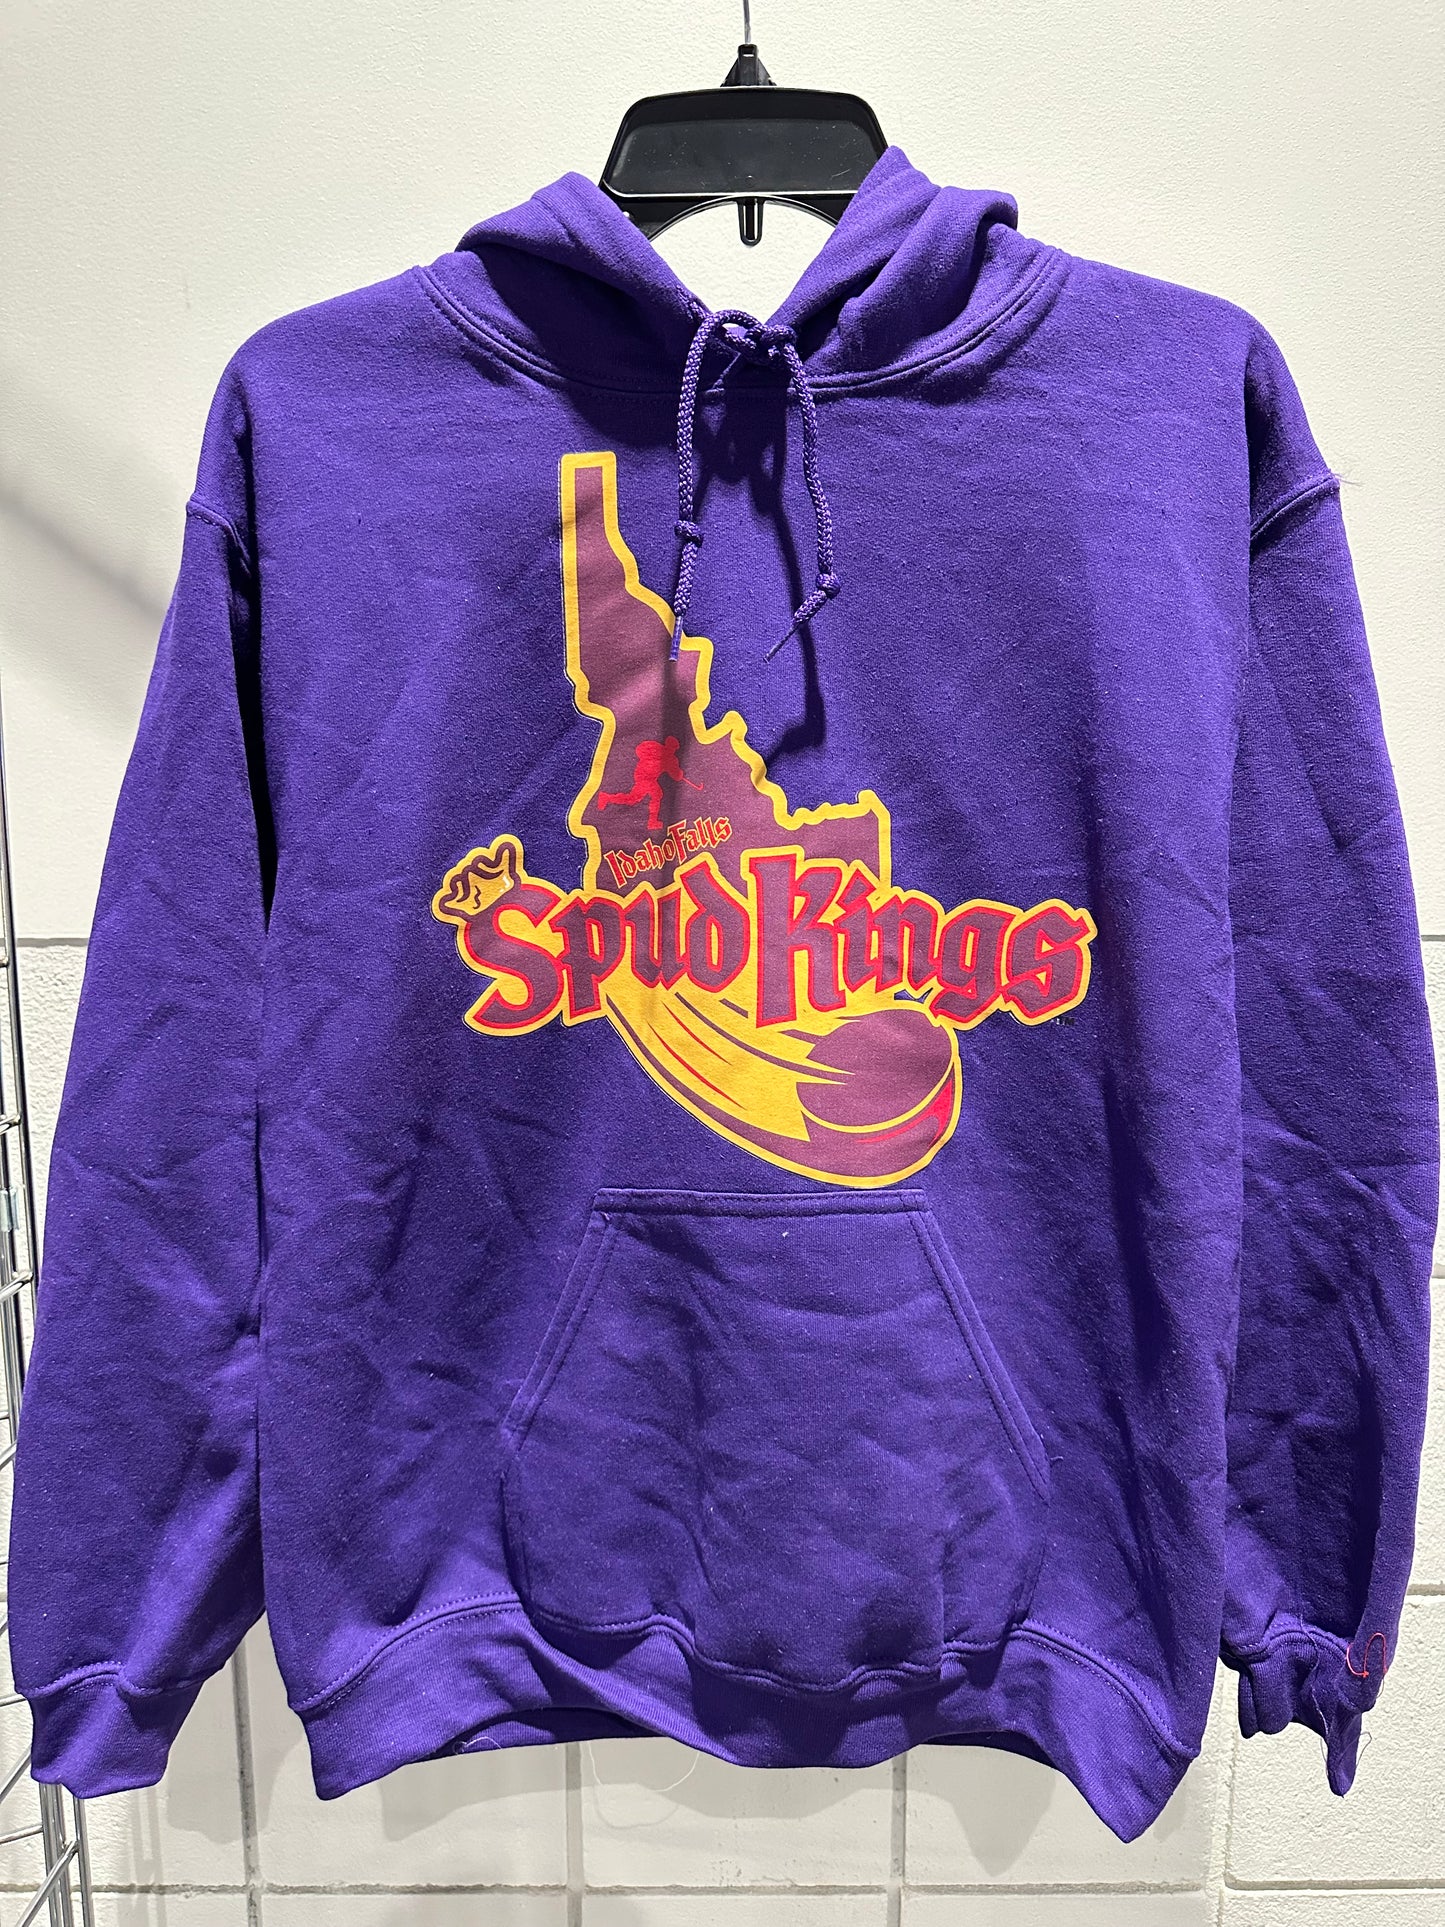 State Spud Kings Hooded Sweatshirt